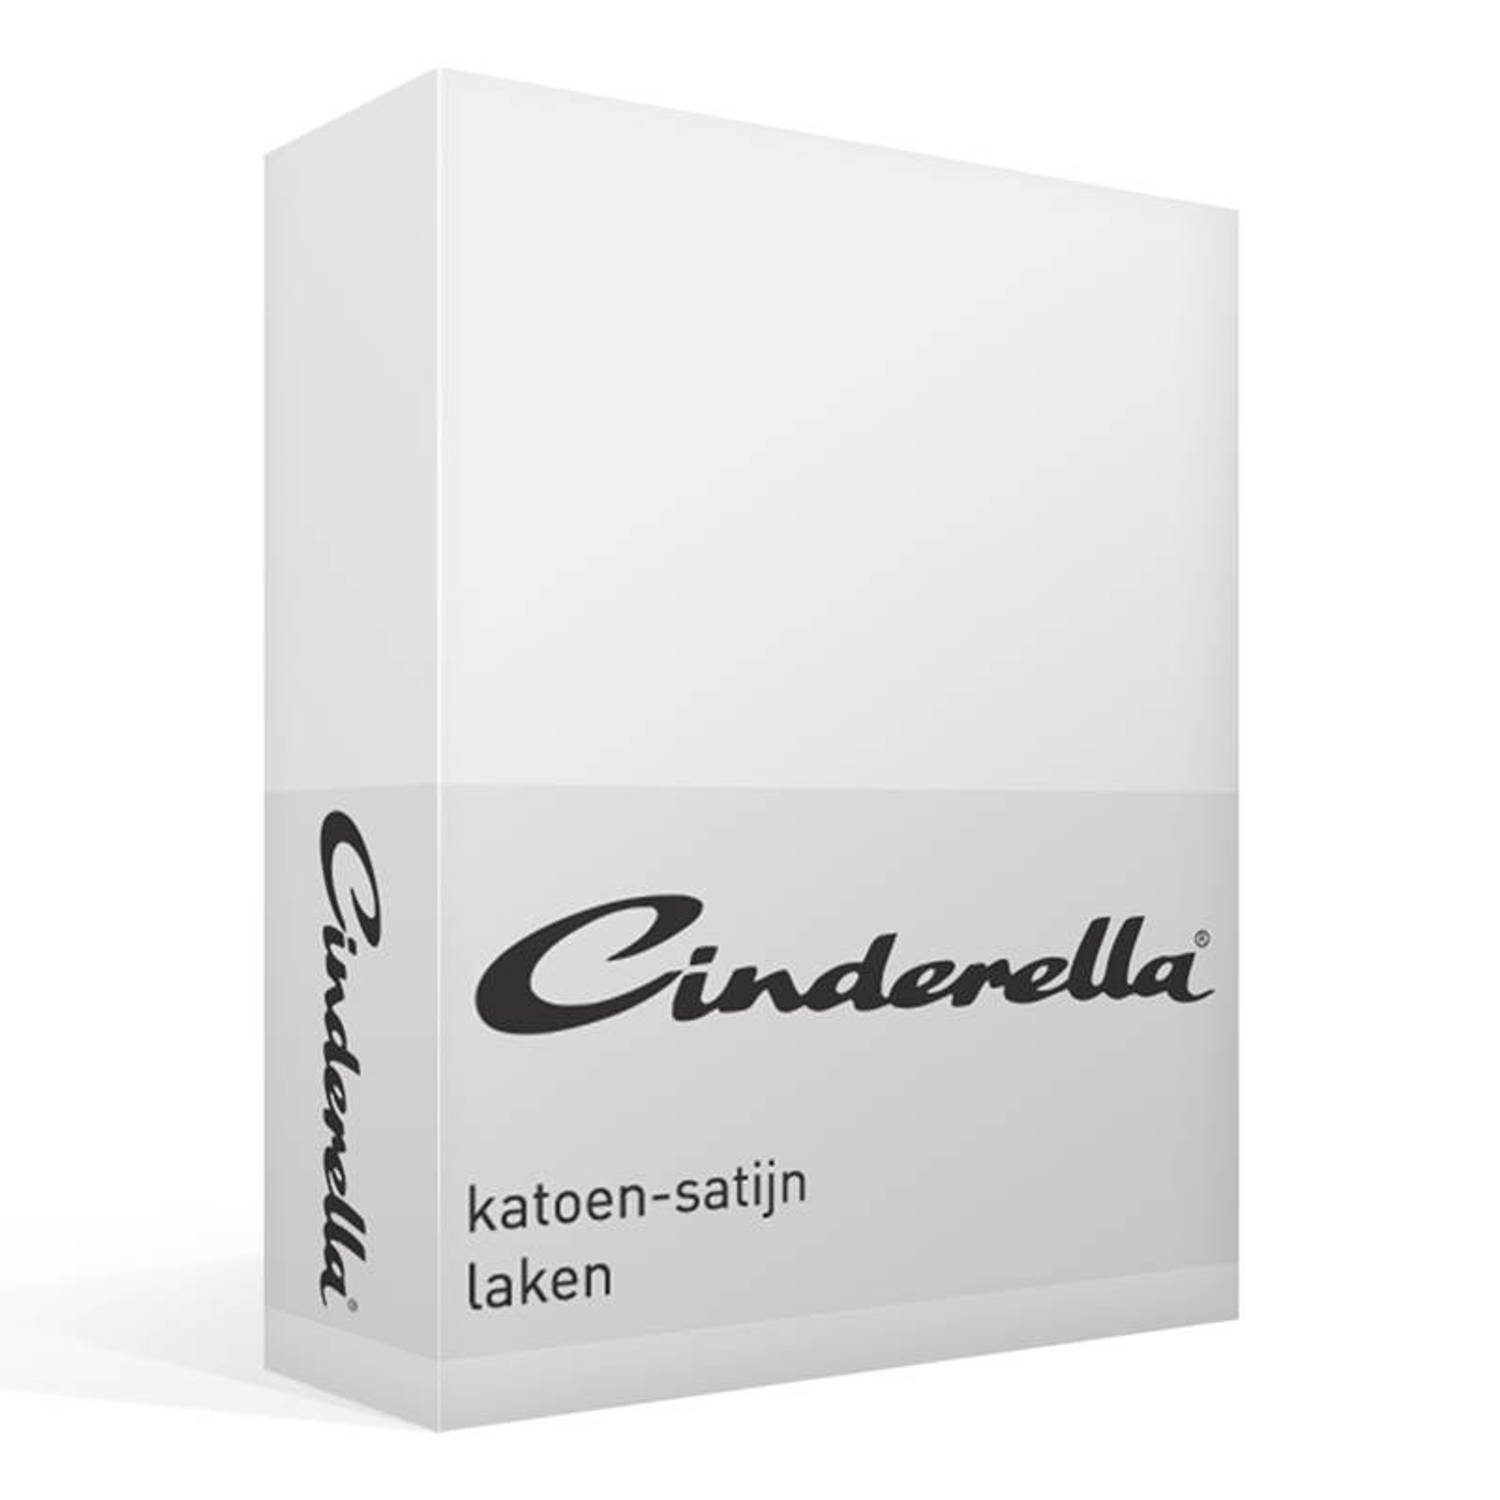 Cinderella Katoen-satijn Laken - 100% Katoen-satijn - 2-persoons (200x270 Cm) - - Wit